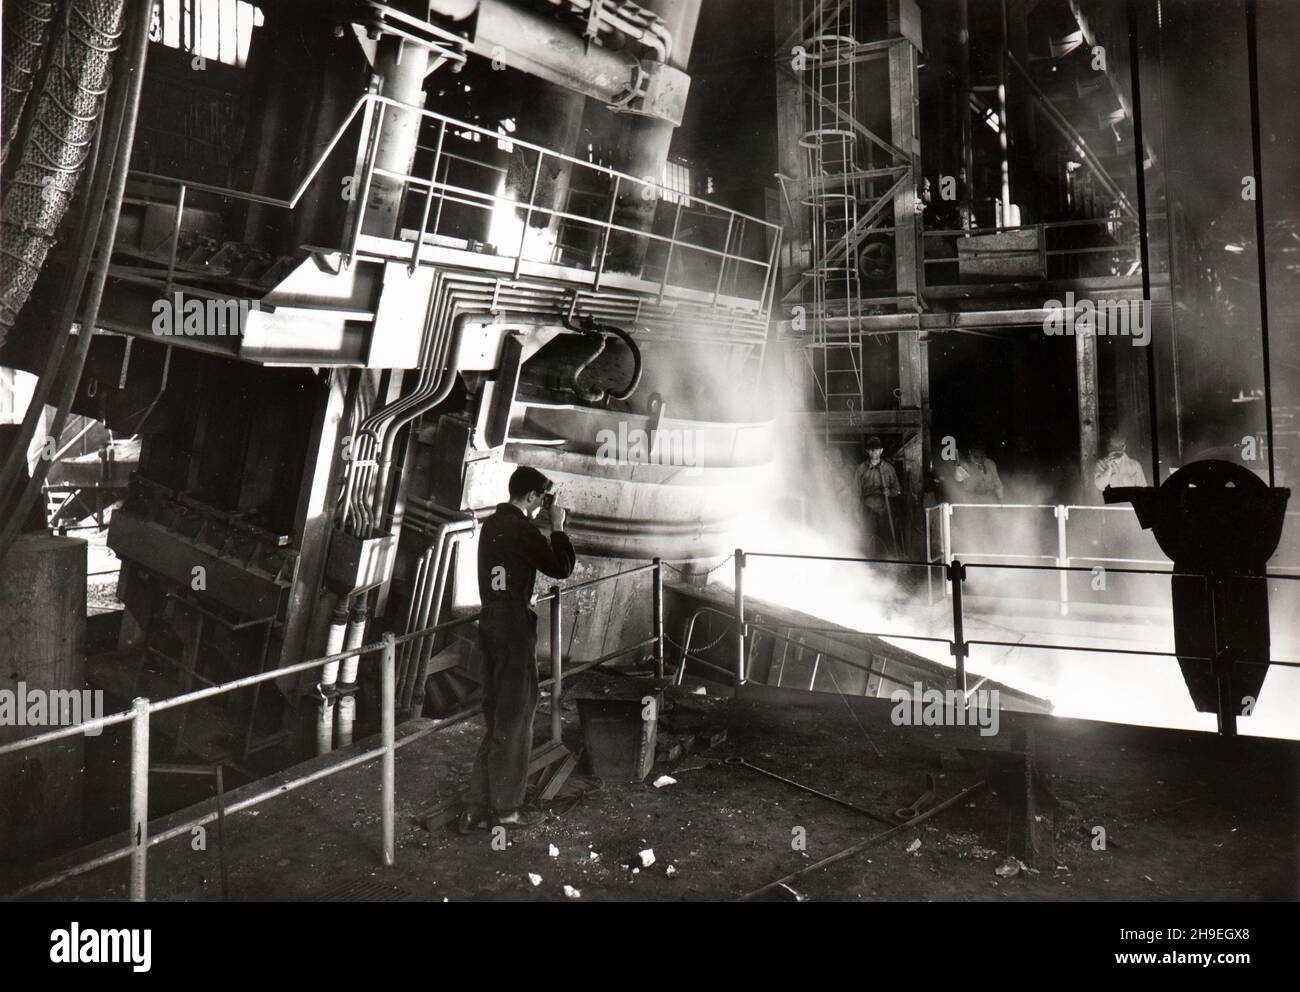 Imagen que muestra una fundición de acero fundido en la acería de Breda (Tecnomasio Italiano Brown Boveri) a finales de los años cincuenta (Milán, Italia) Foto de stock